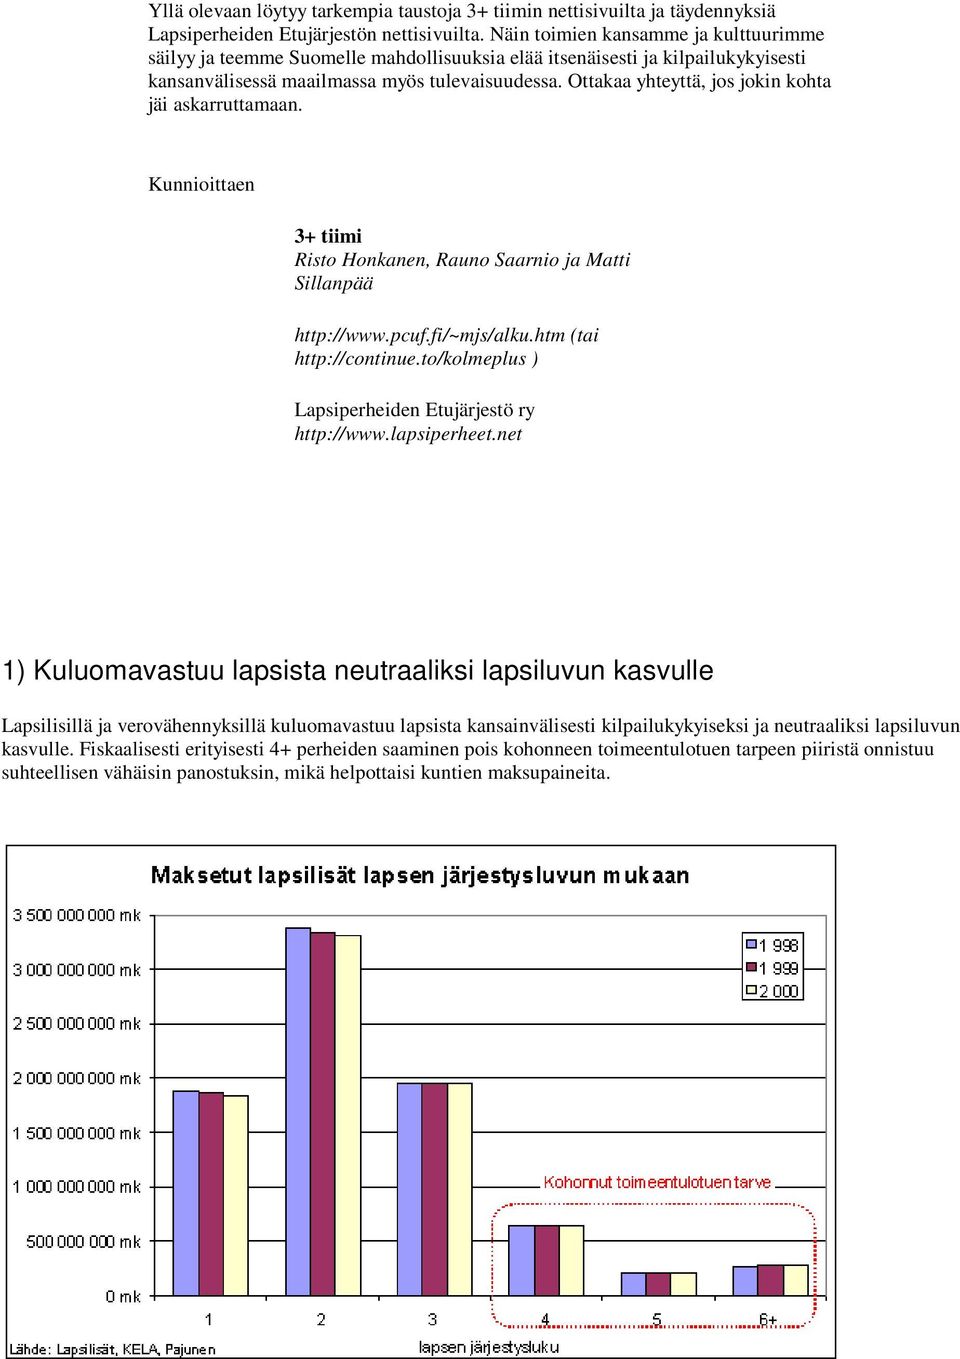 Ottakaa yhteyttä, jos jokin kohta jäi askarruttamaan. Kunnioittaen 3+ tiimi Risto Honkanen, Rauno Saarnio ja Matti Sillanpää http://www.pcuf.fi/~mjs/alku.htm (tai http://continue.